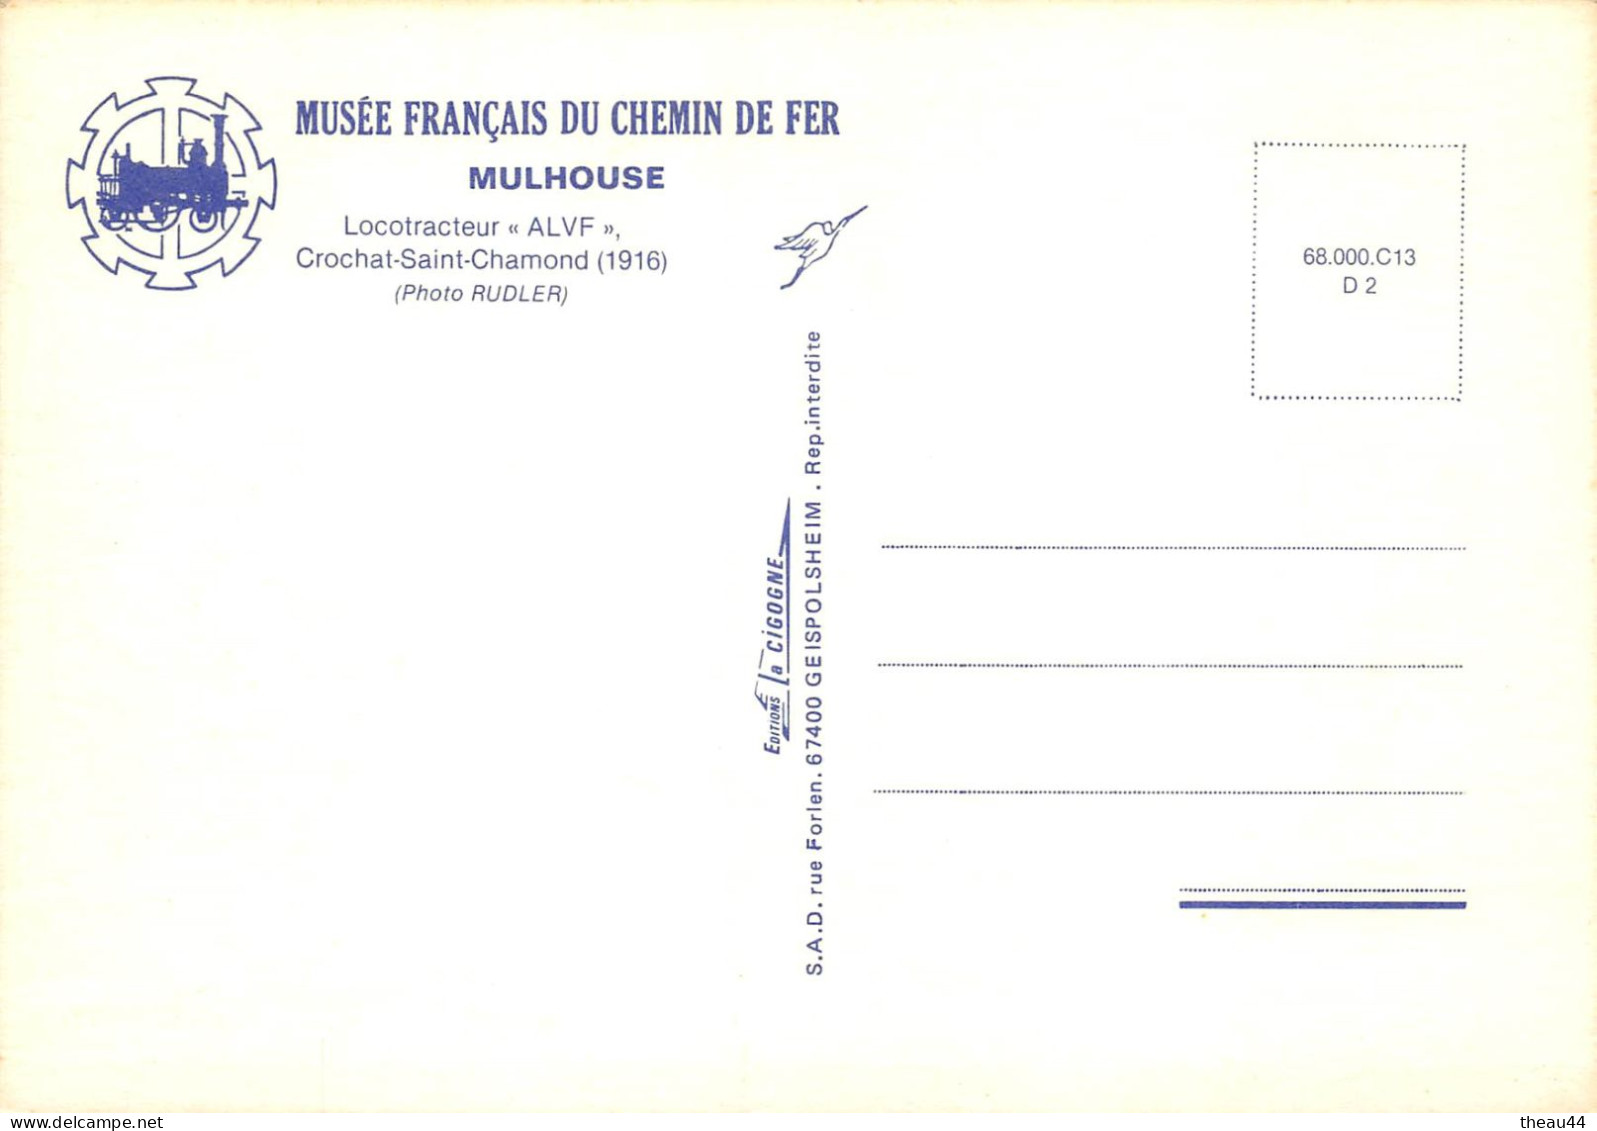 ¤¤  -  Lot de 10 Cartes du Musée Français du Chemin de Fer de MULHOUSE  -  Locomotives, Wagons, Trains, Autorail   -  ¤¤